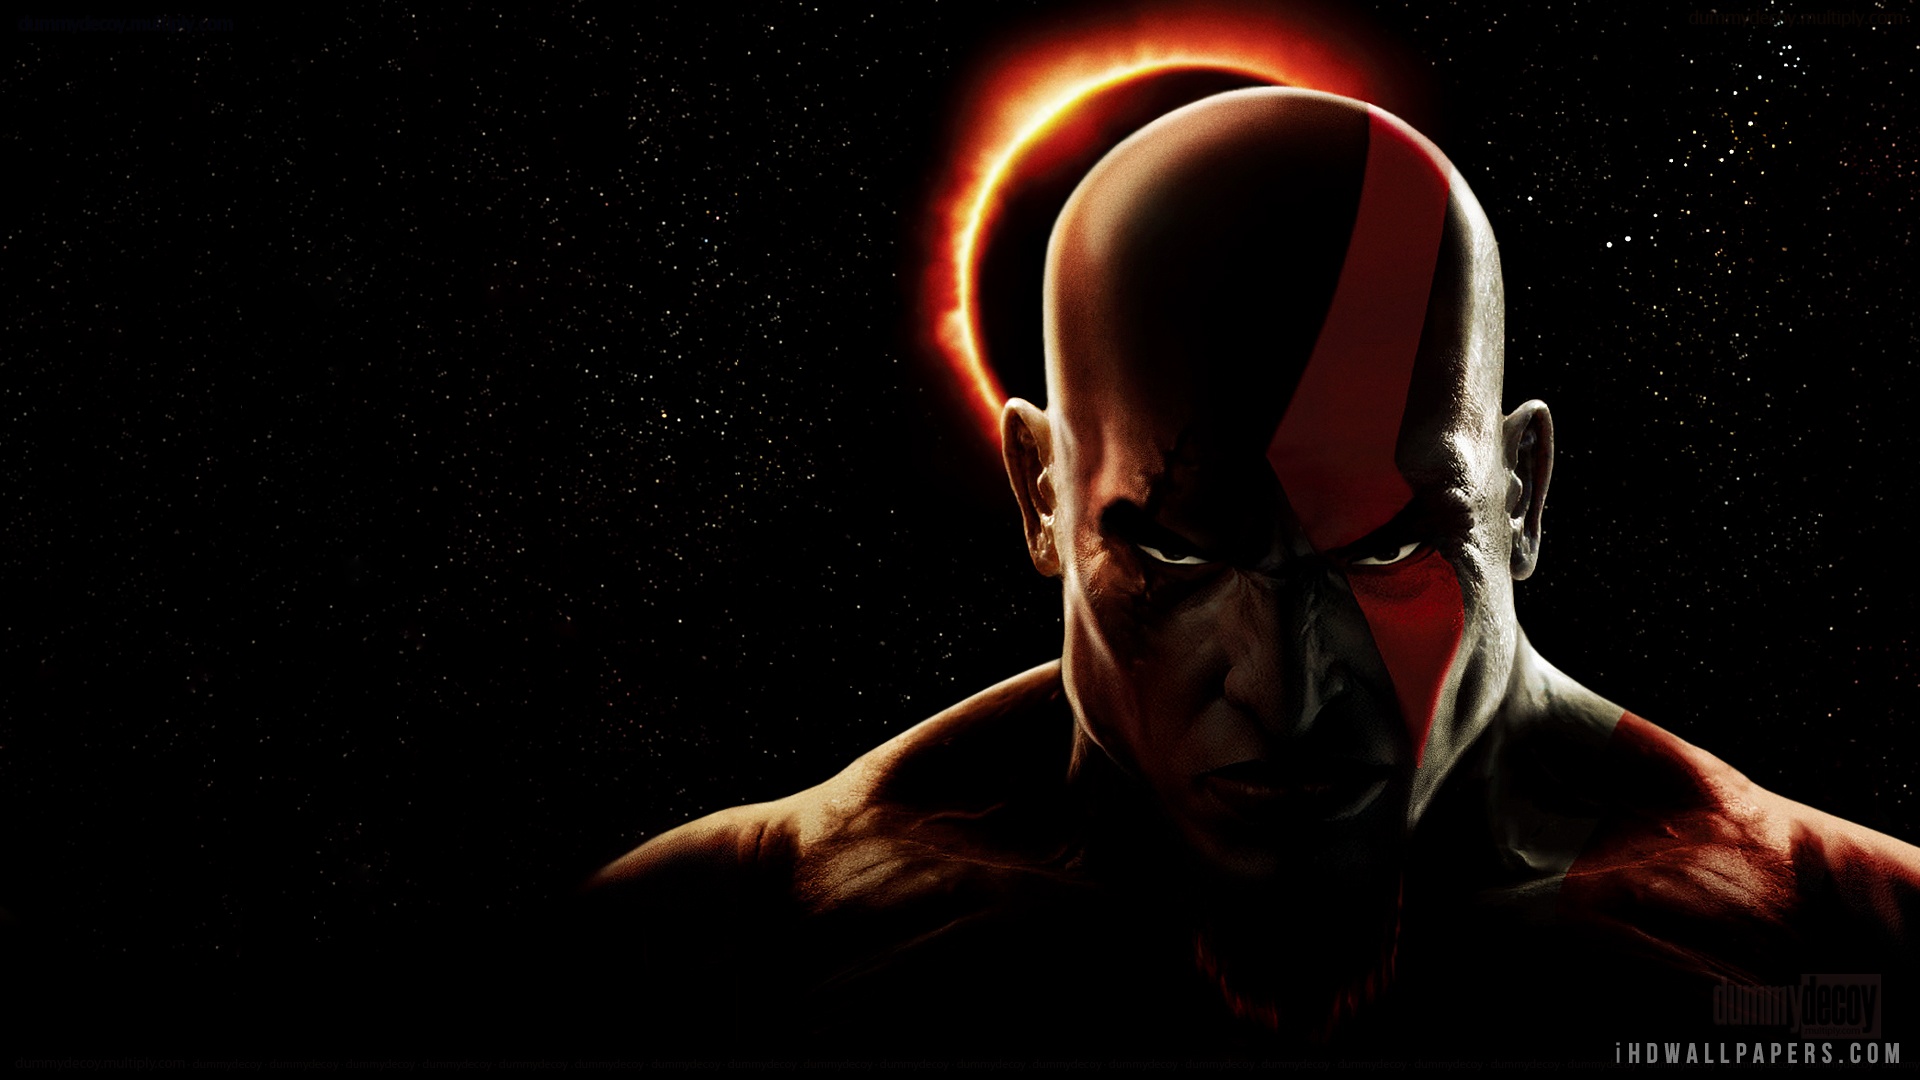 72+] Kratos Hd Wallpaper - WallpaperSafari